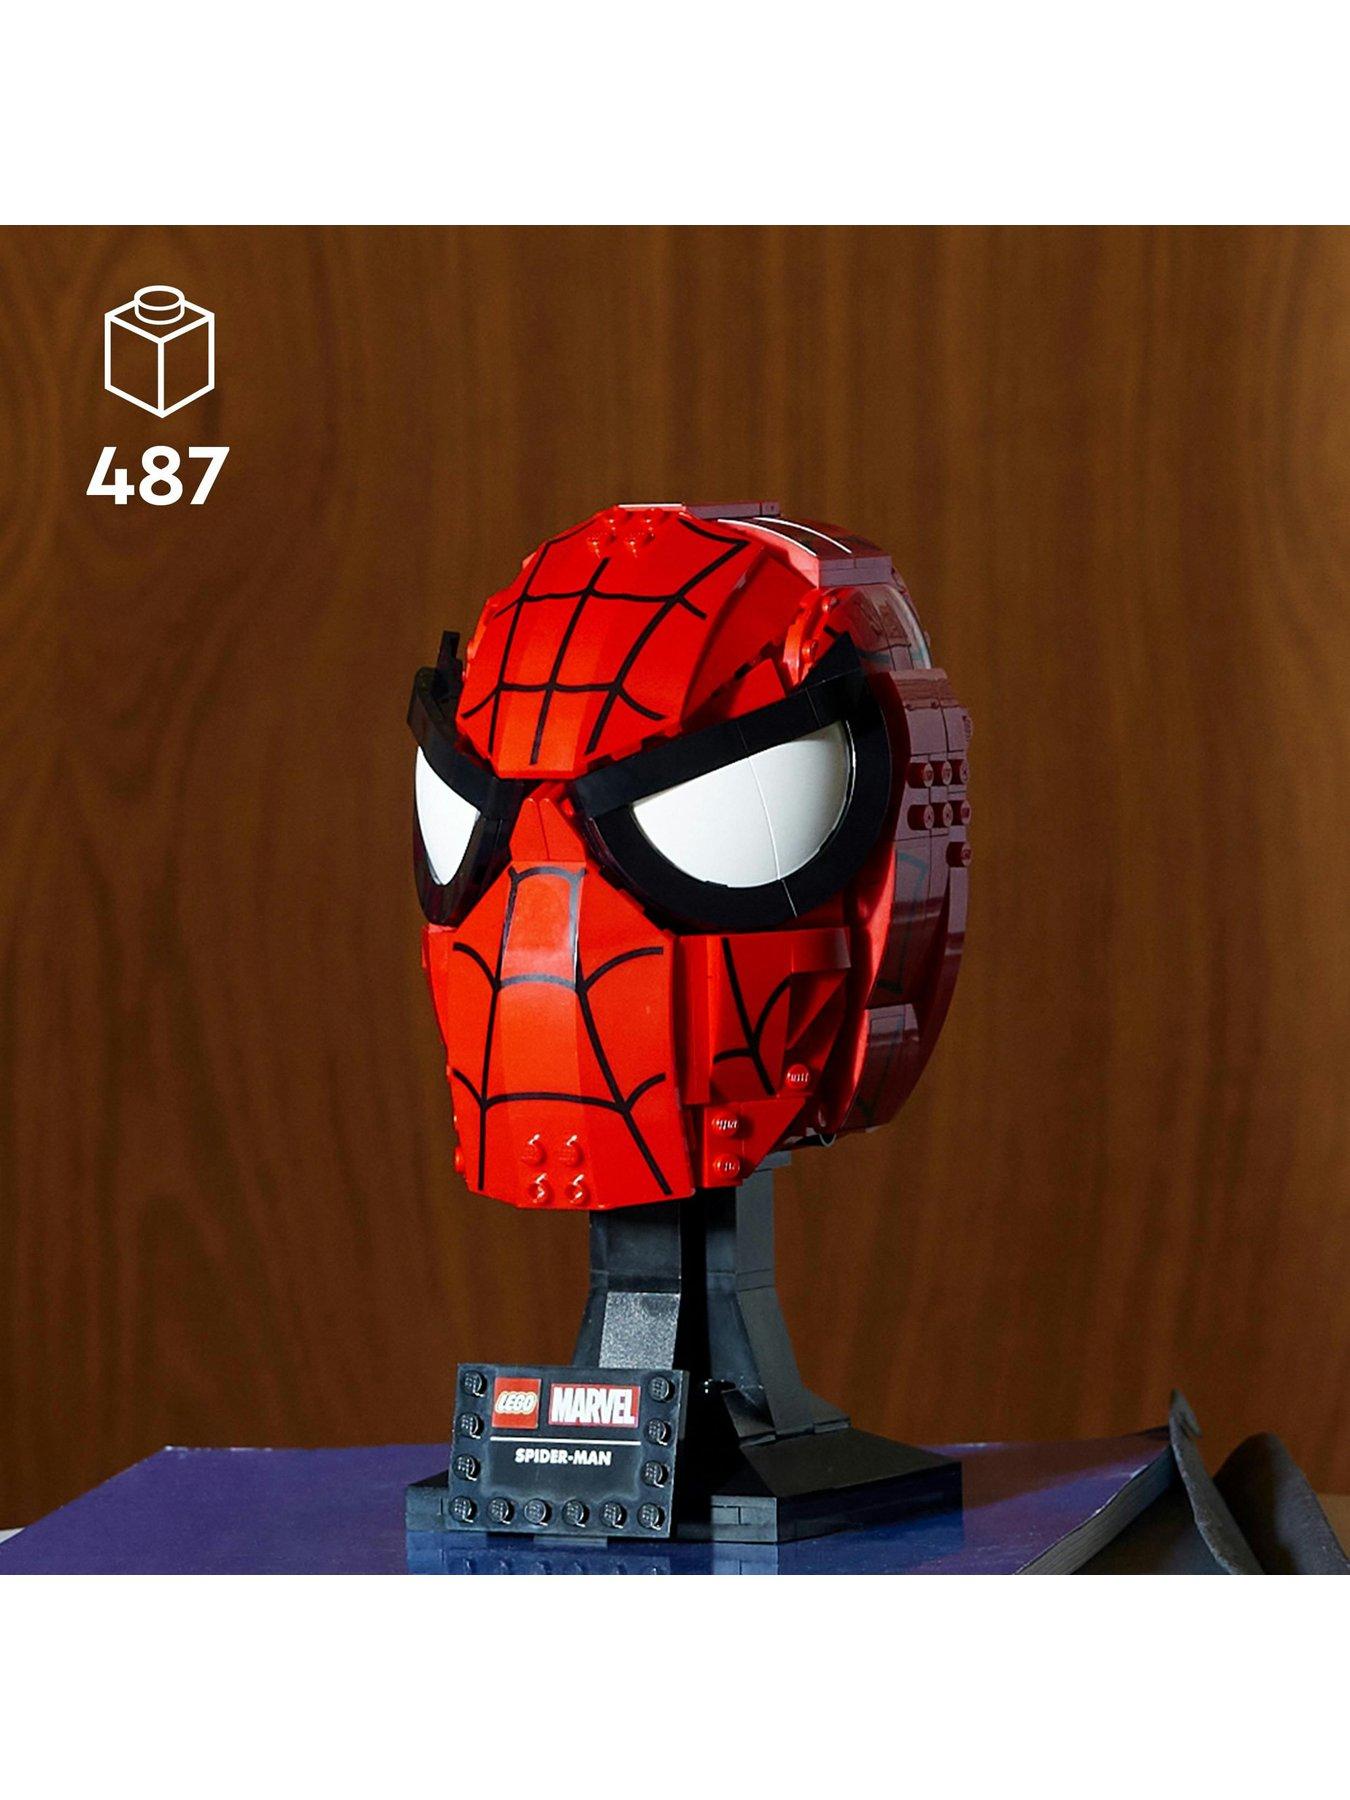 Spider-Man's Mask 76285, Spider-Man